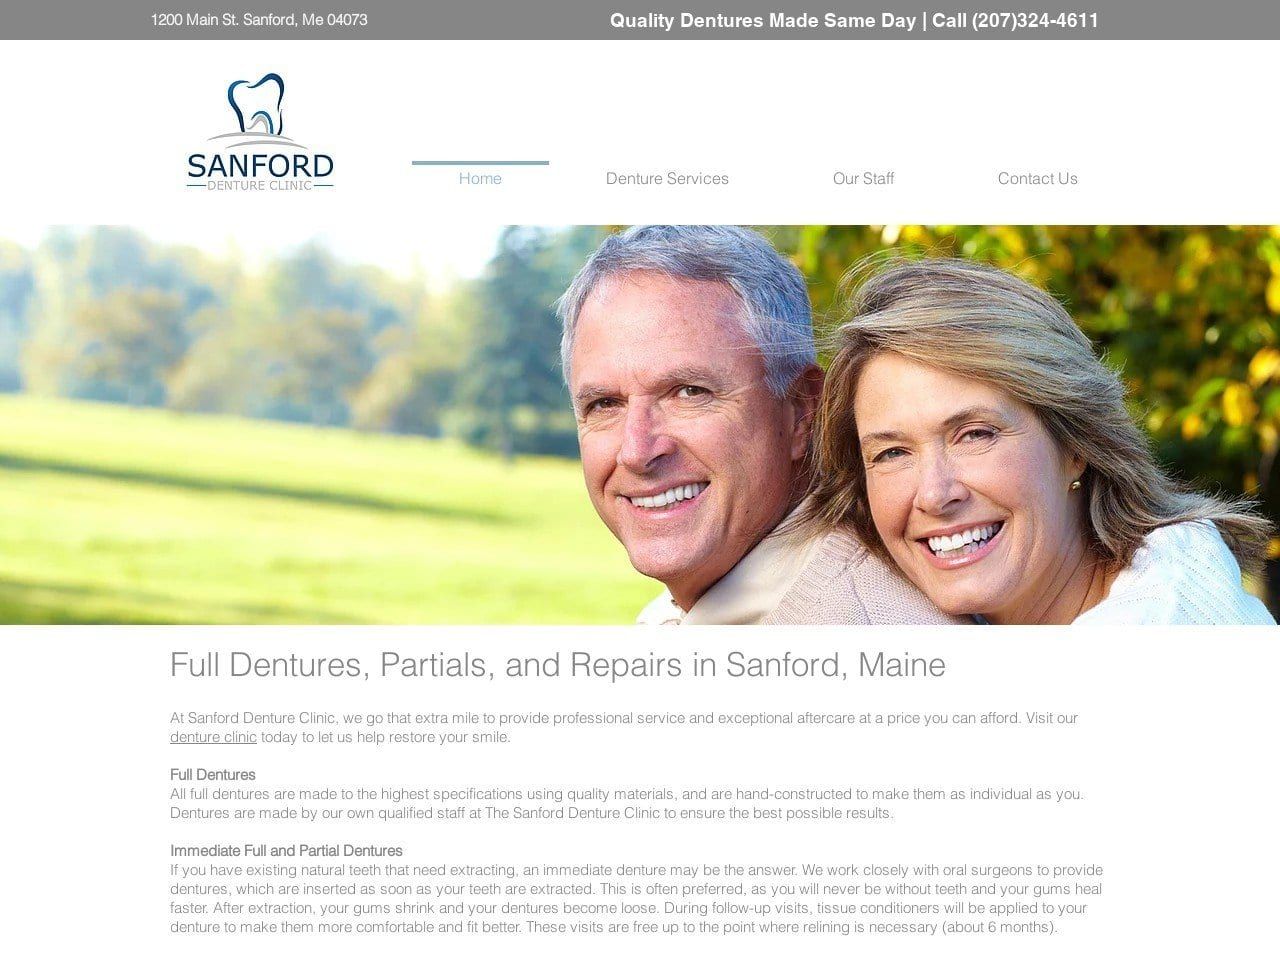 Sanford Denture Clinic LLC Website Screenshot from sanforddentureclinic.com